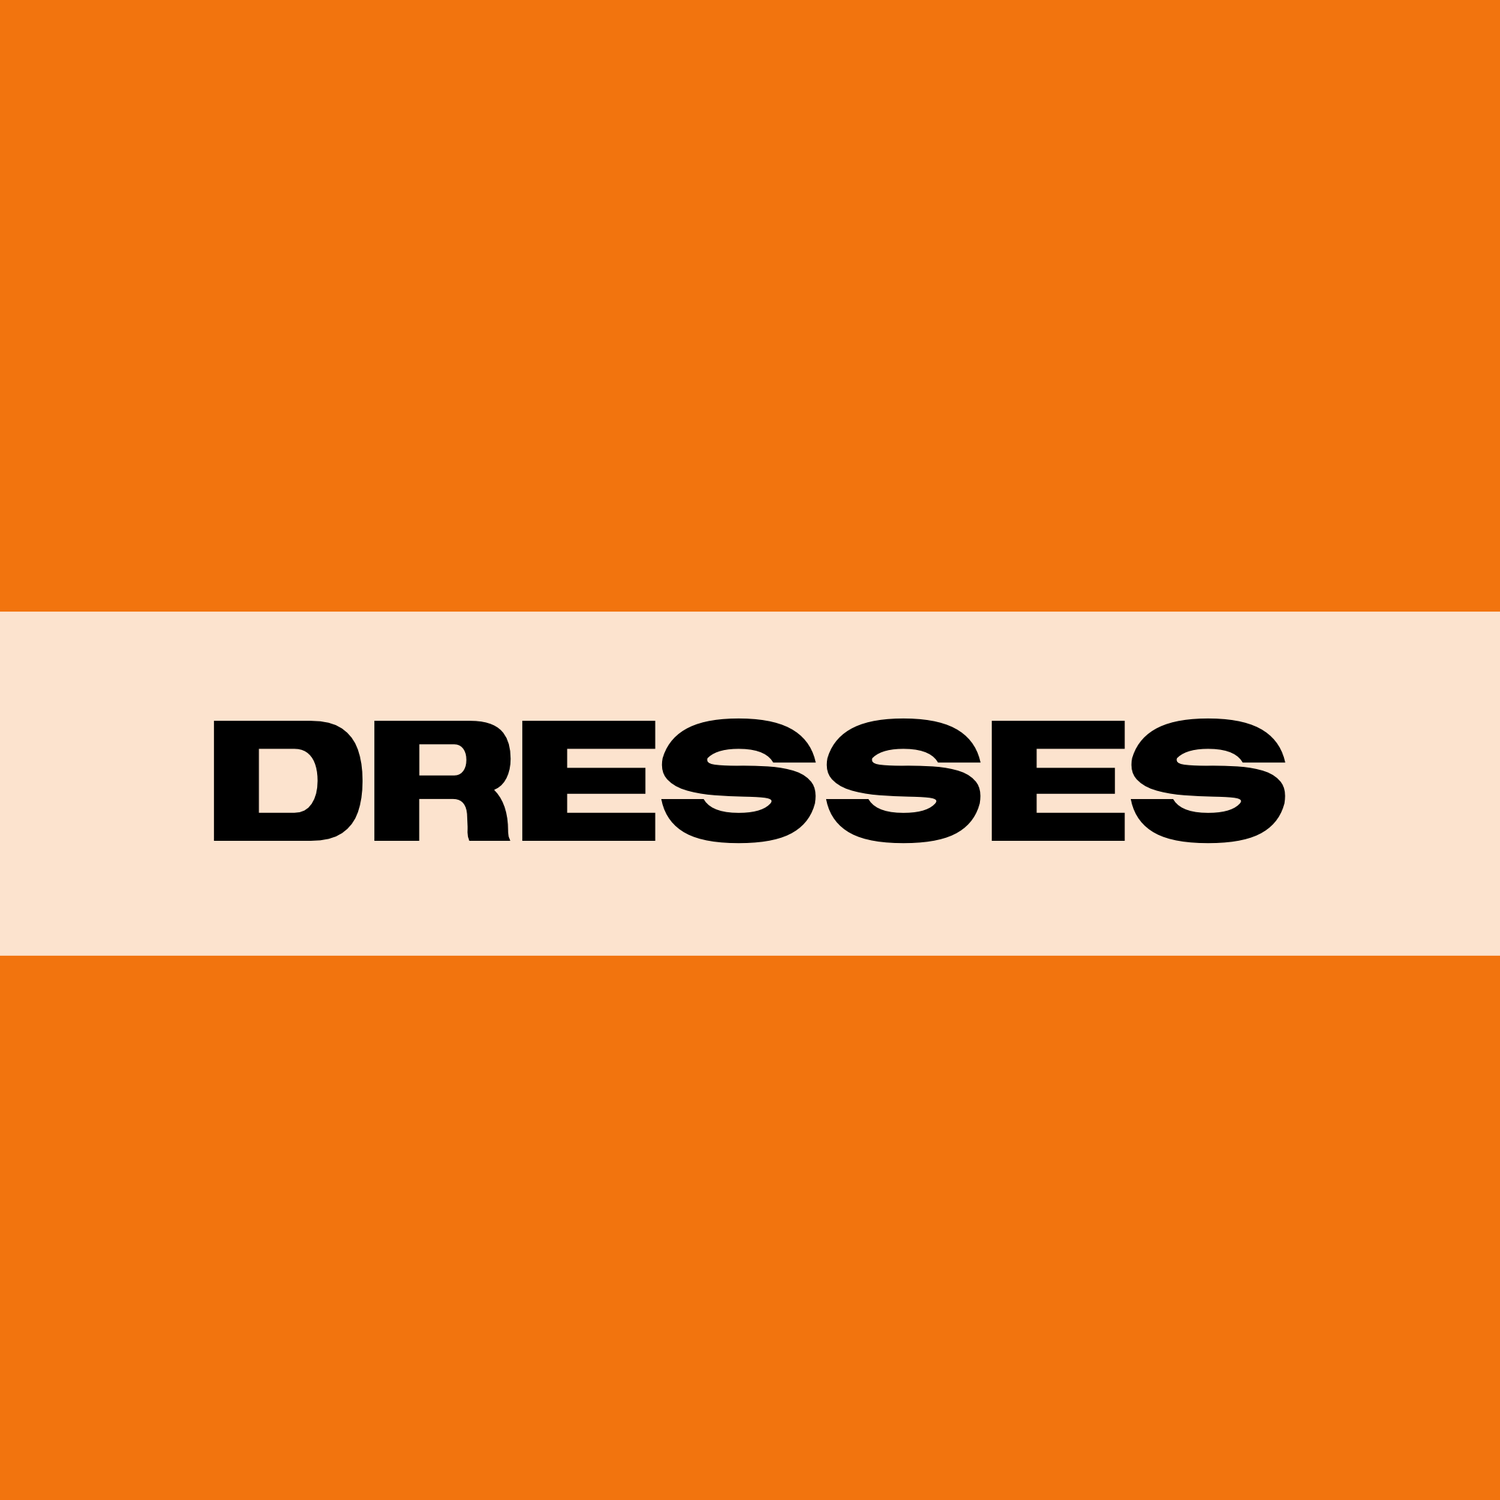 DRESSES